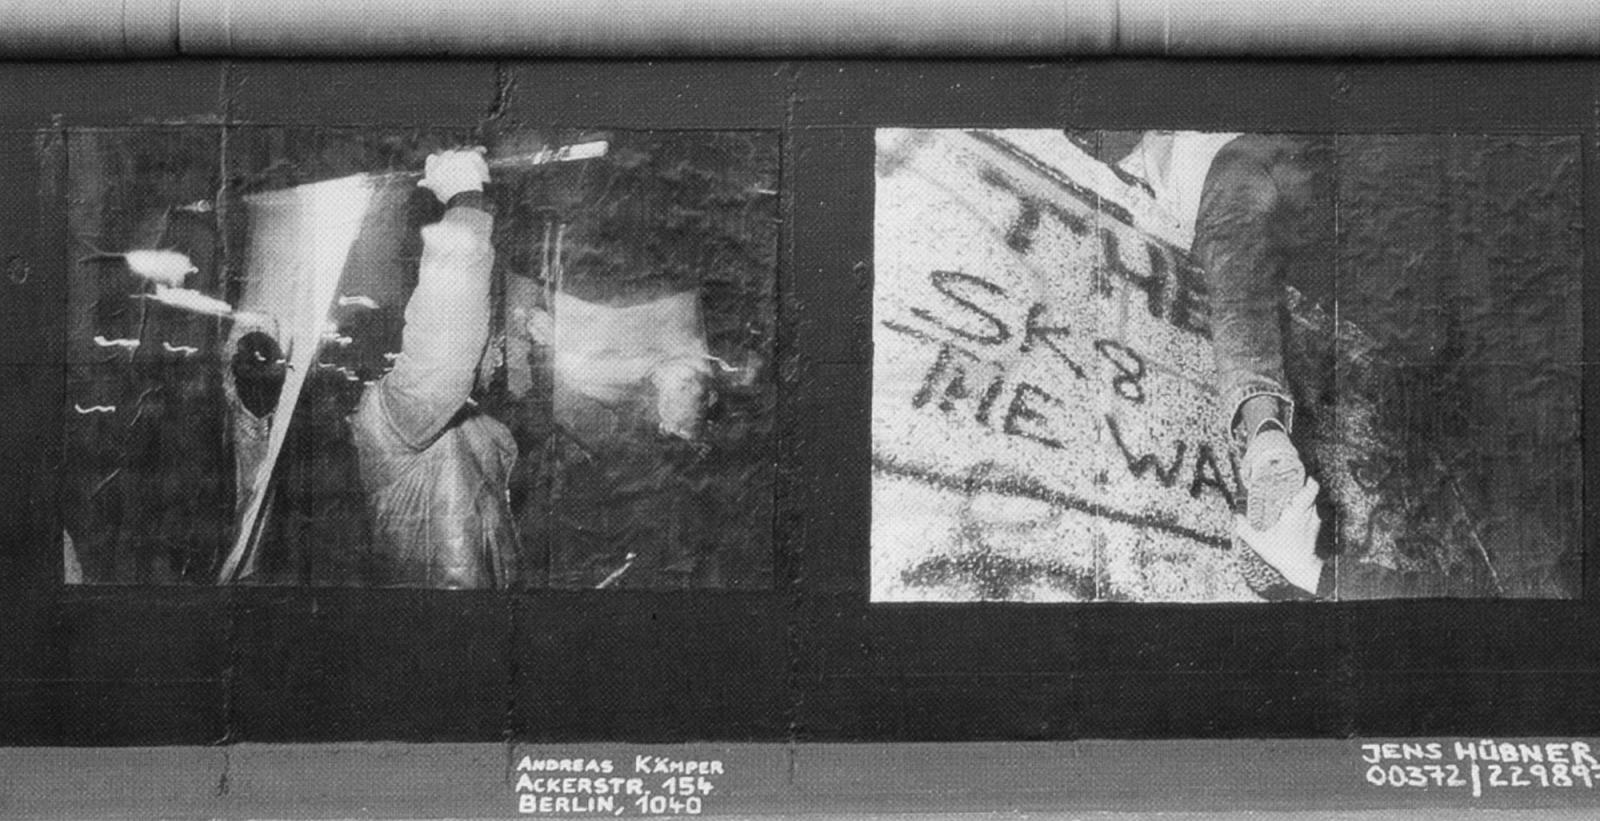 Andreas Kämper, Jens Hübner, ohne Titel, 1990, Stiftung Berliner Mauer, Andreas Kämper